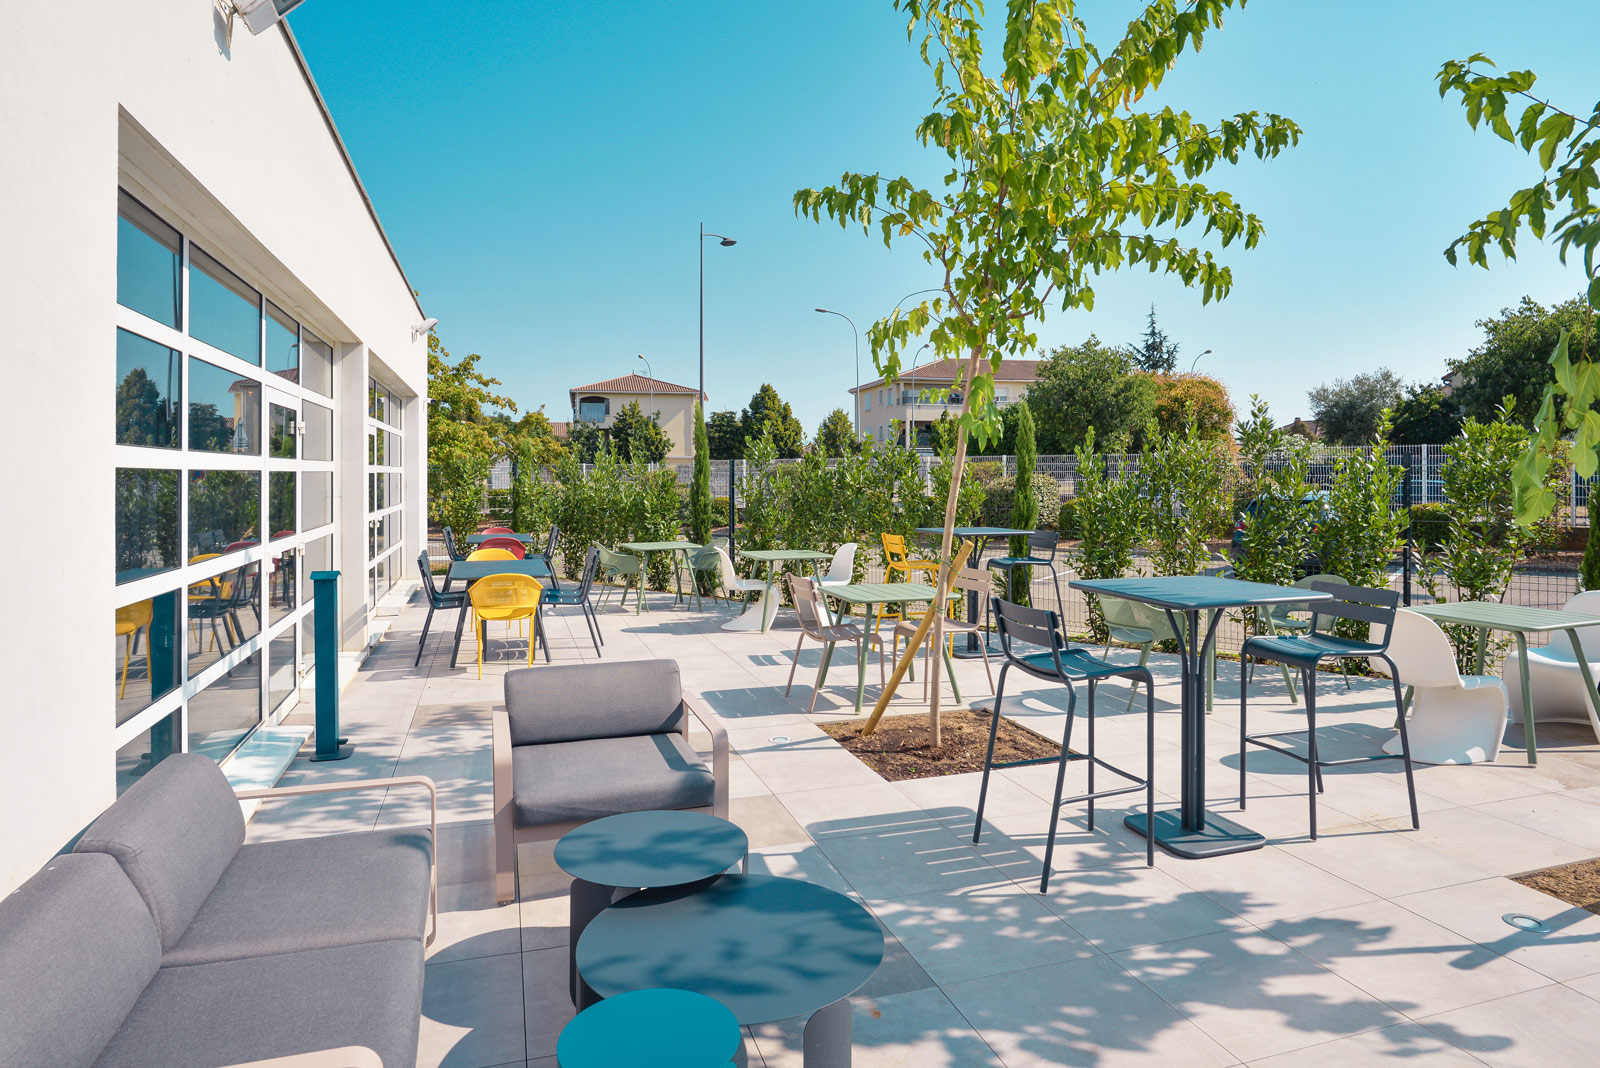 Hôtel literie neuve confort Lyon Meyzieu Stadium Olympique avec piscine et terrasse extérieure